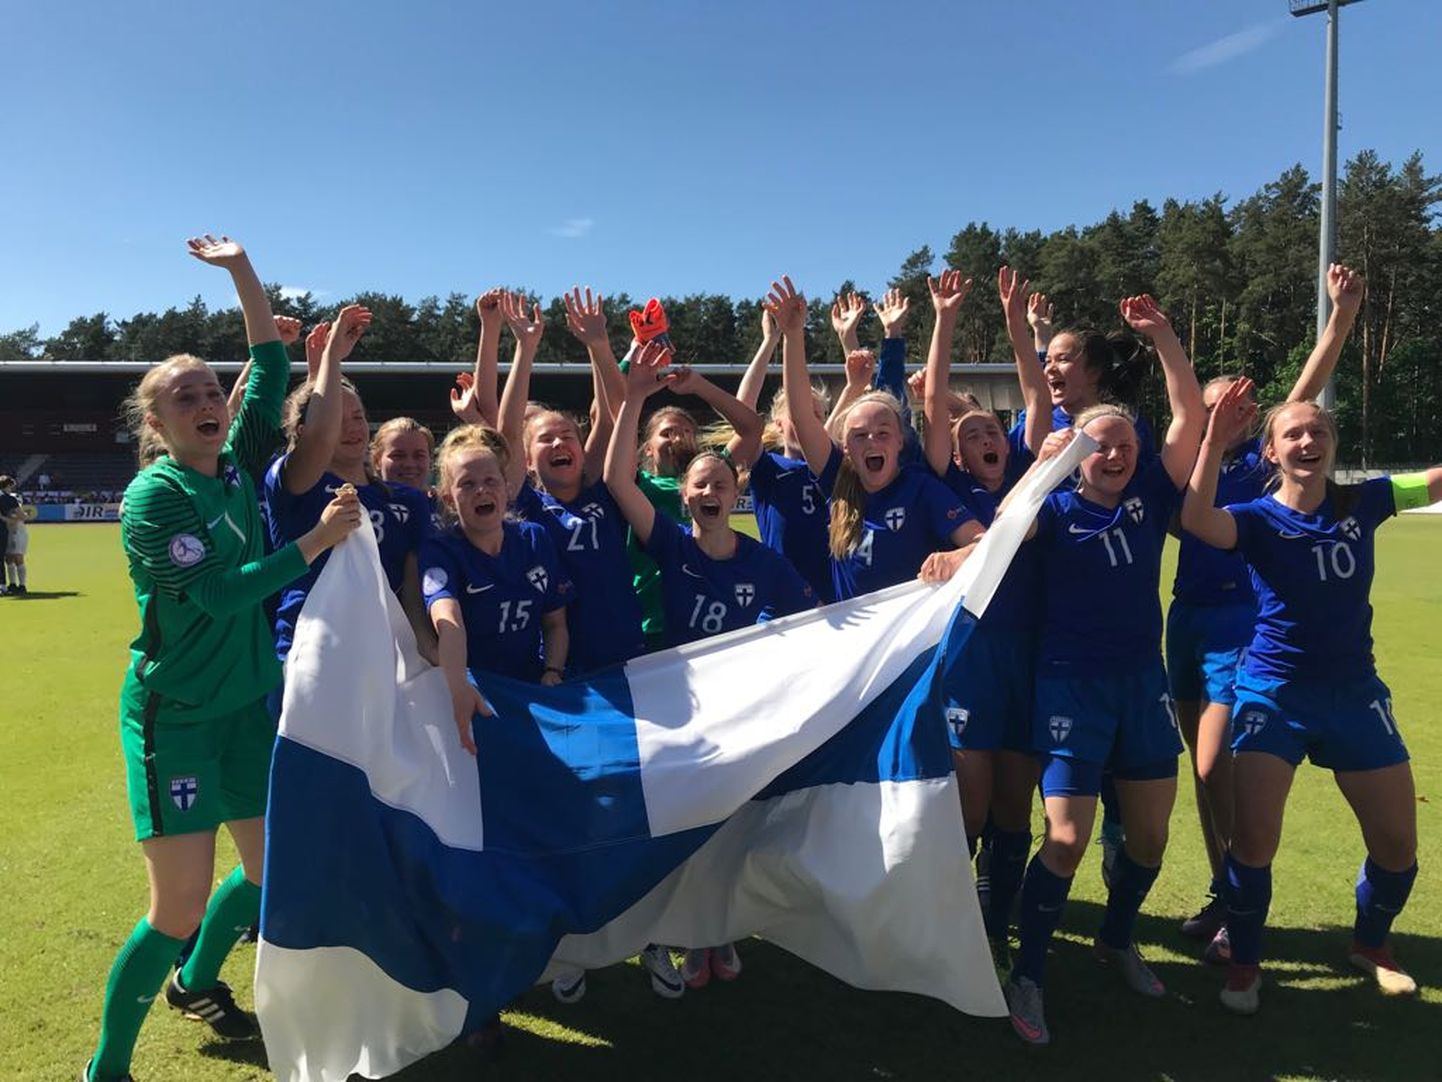 Soome U17 naiskond sõidab MM-finaalturniirile.